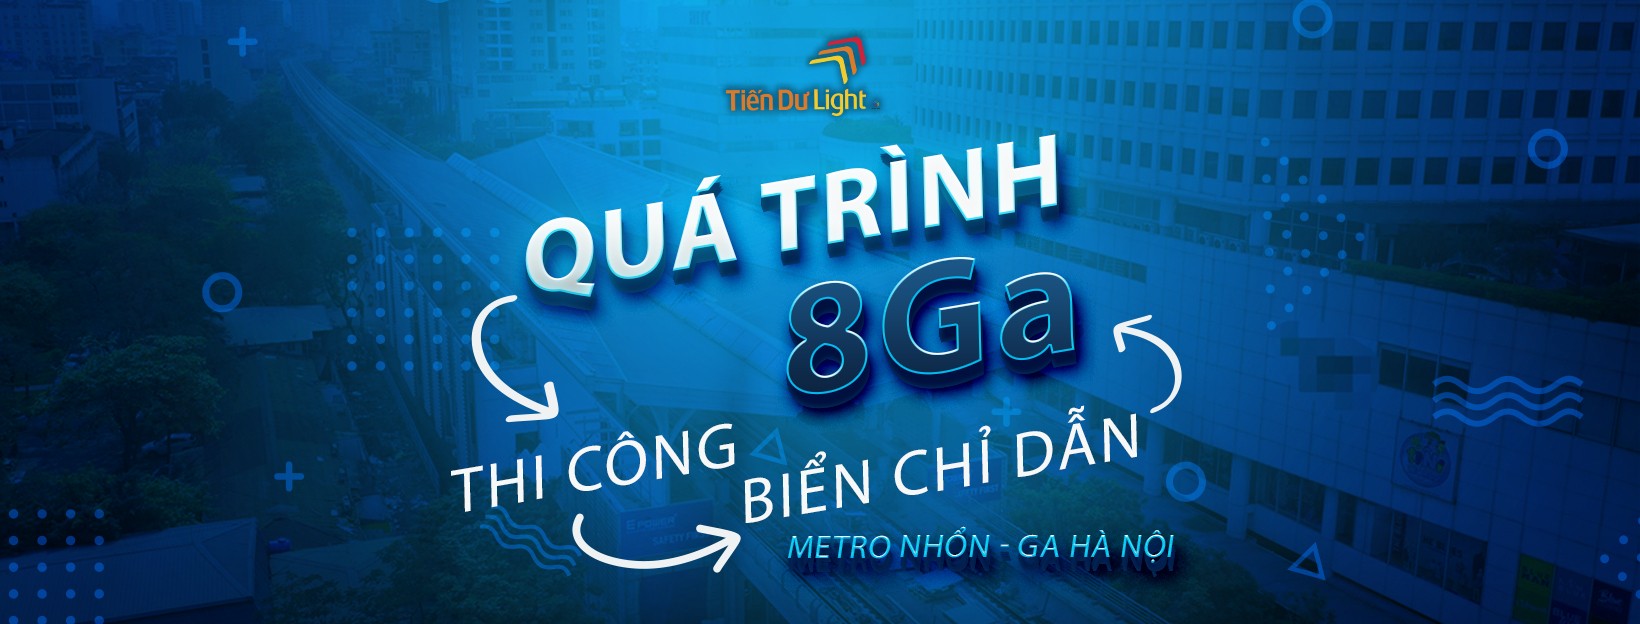 Tiến Dư Light và hành trình thi công biển chỉ dẫn 8 nhà ga tuyến Metro Nhổn - Ga Hà Nội